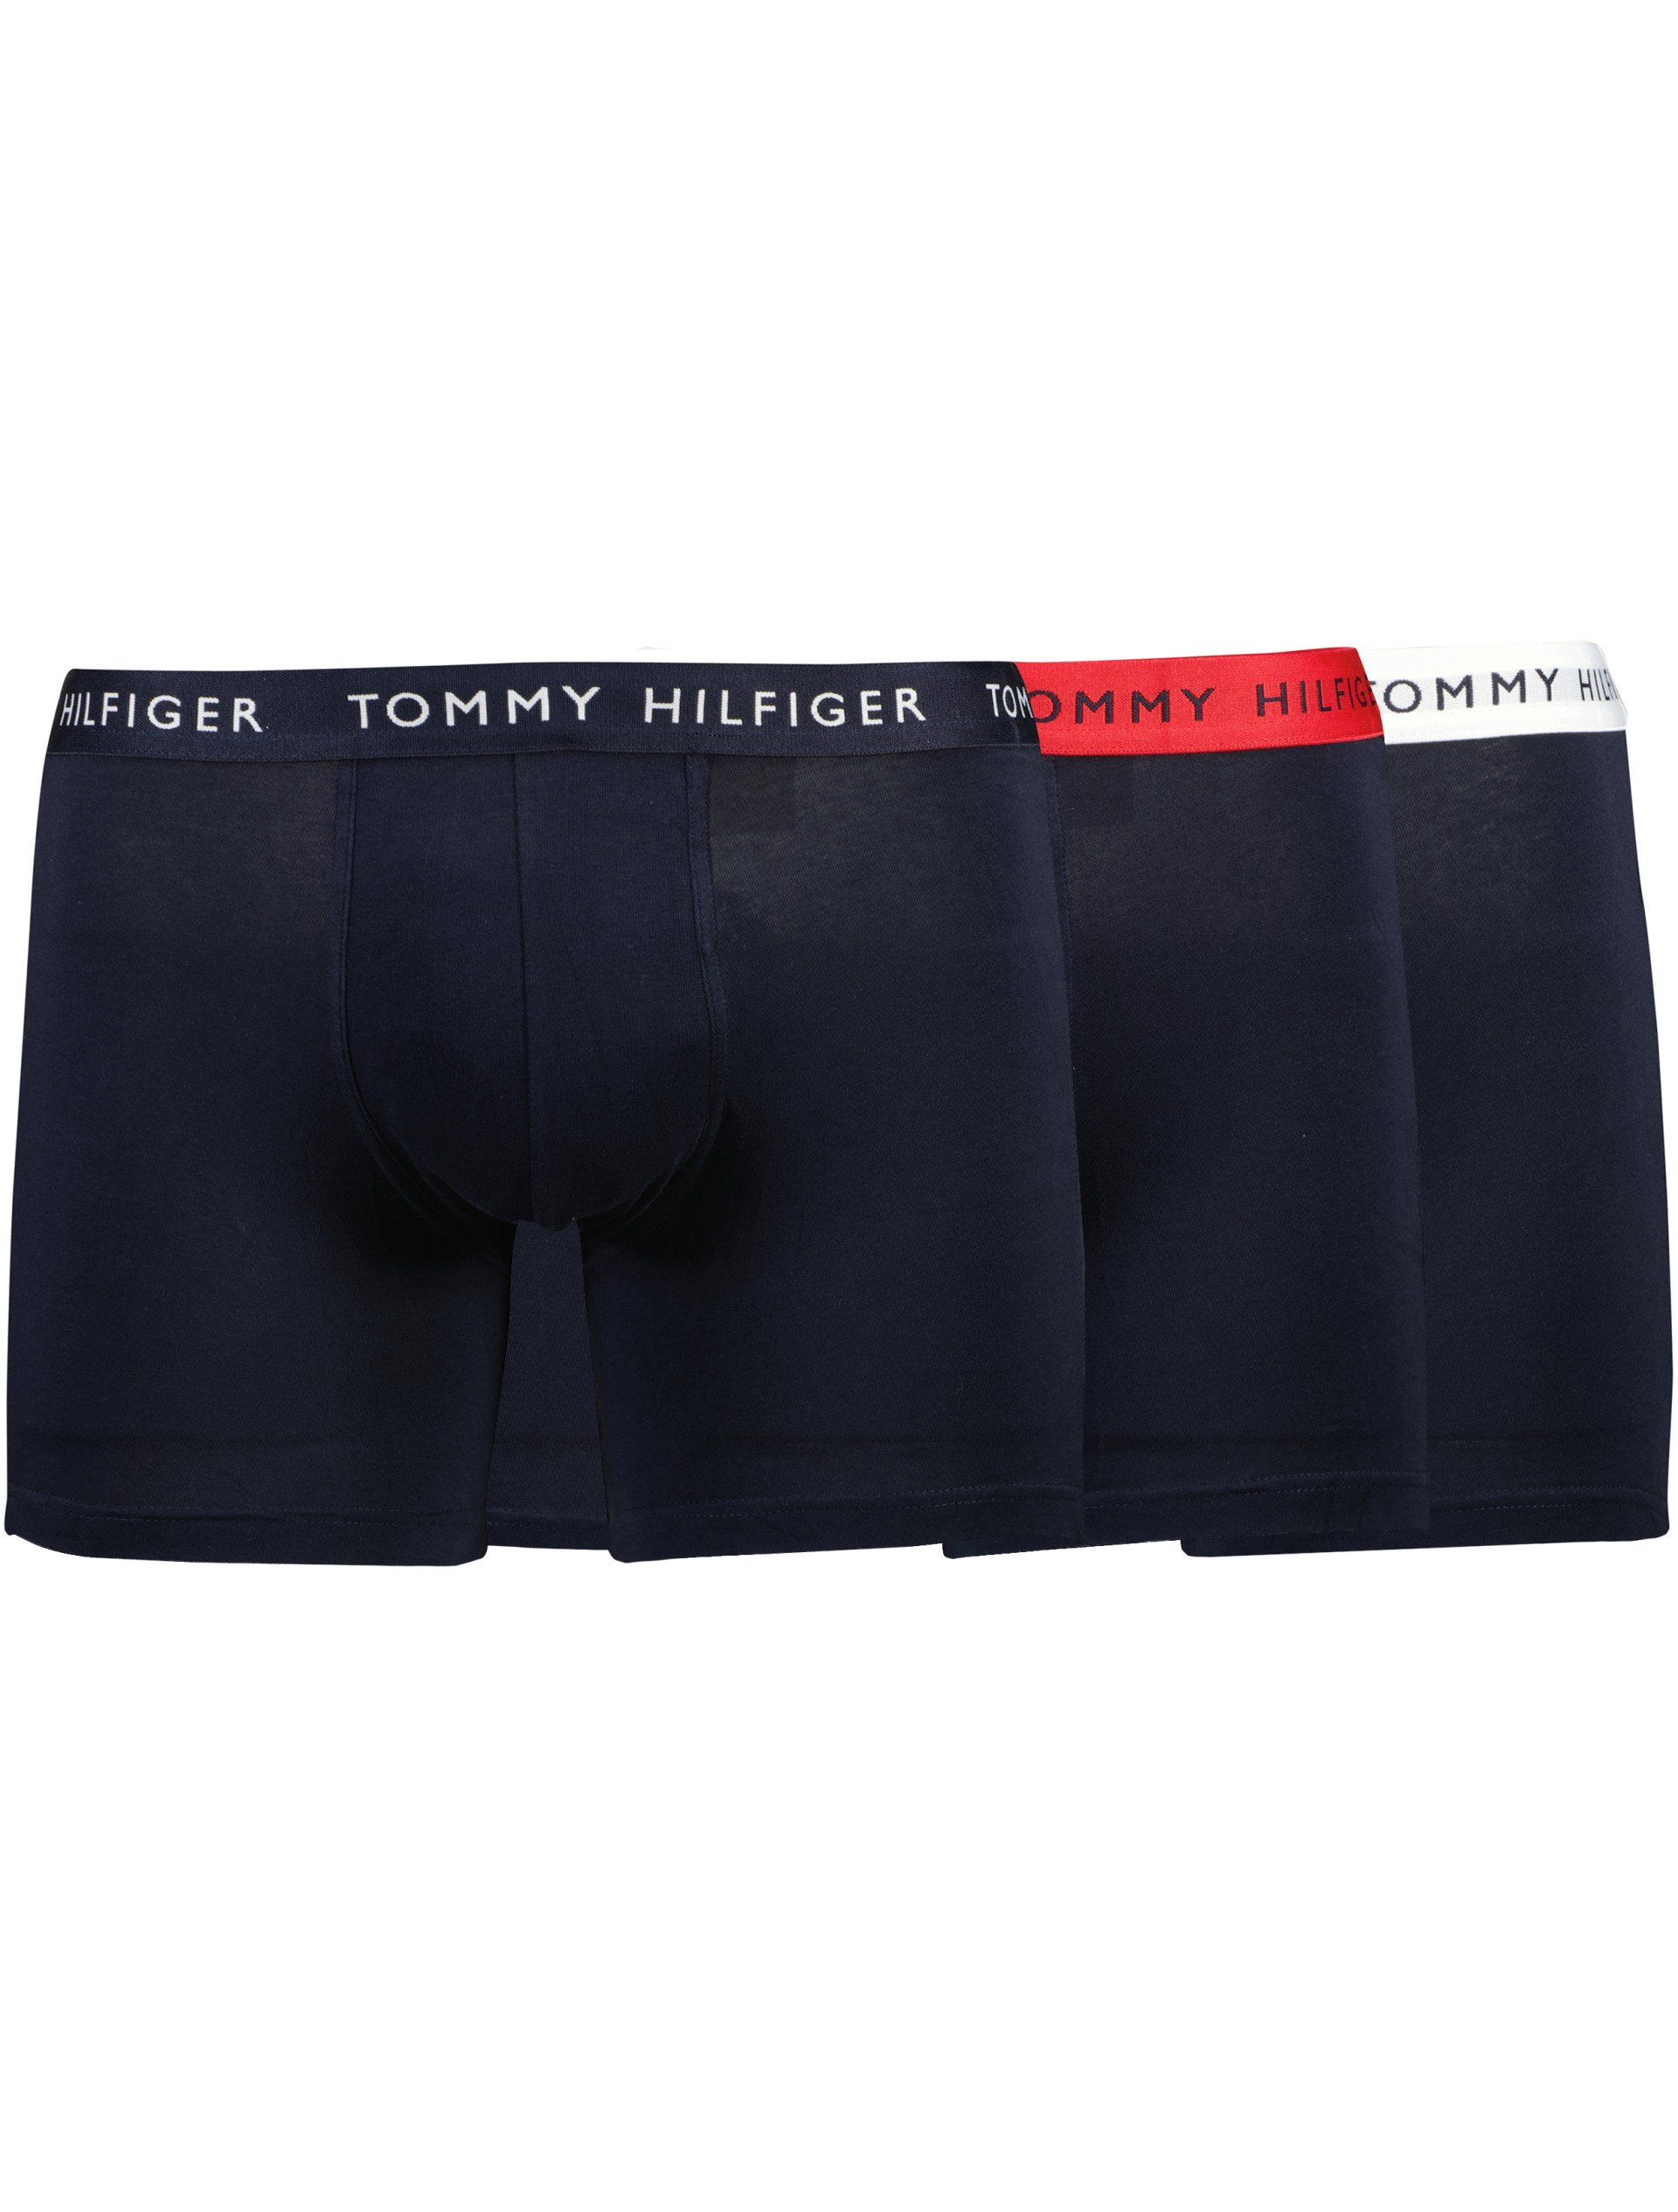 Tommy Hilfiger Tights blå / 0ta navy